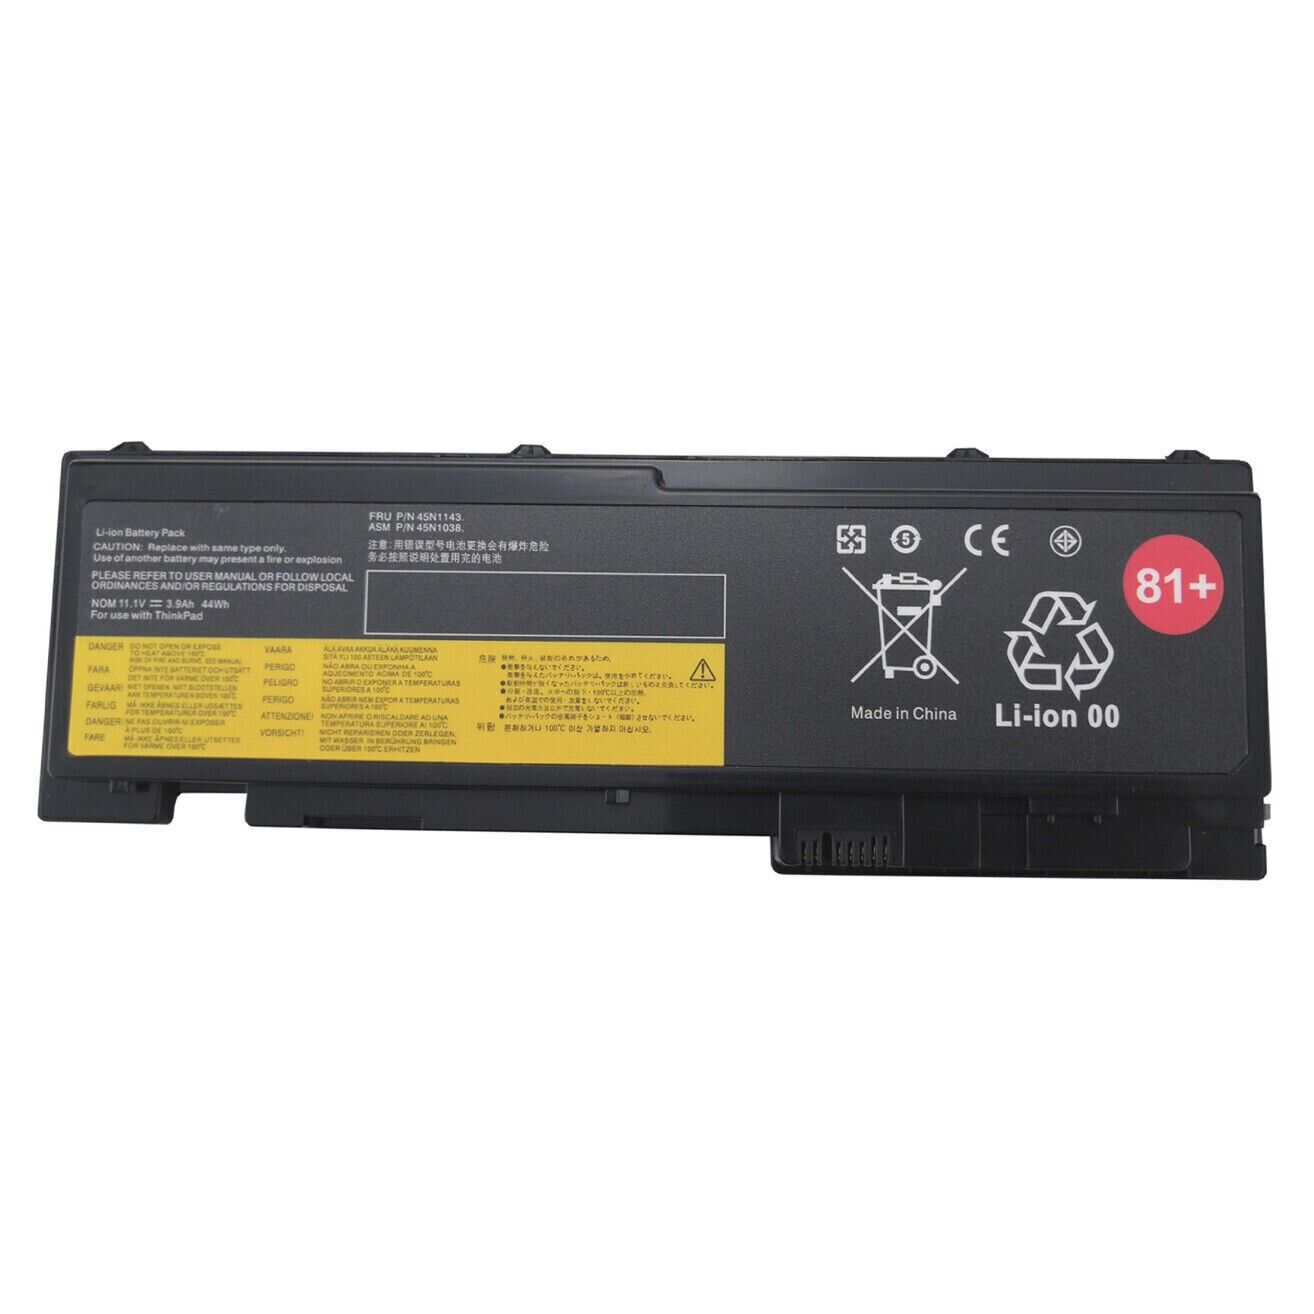 81+T430S T430si Battery for Lenovo ThinkPad T420S 0A36287 45N1036 45N1143 44Wh